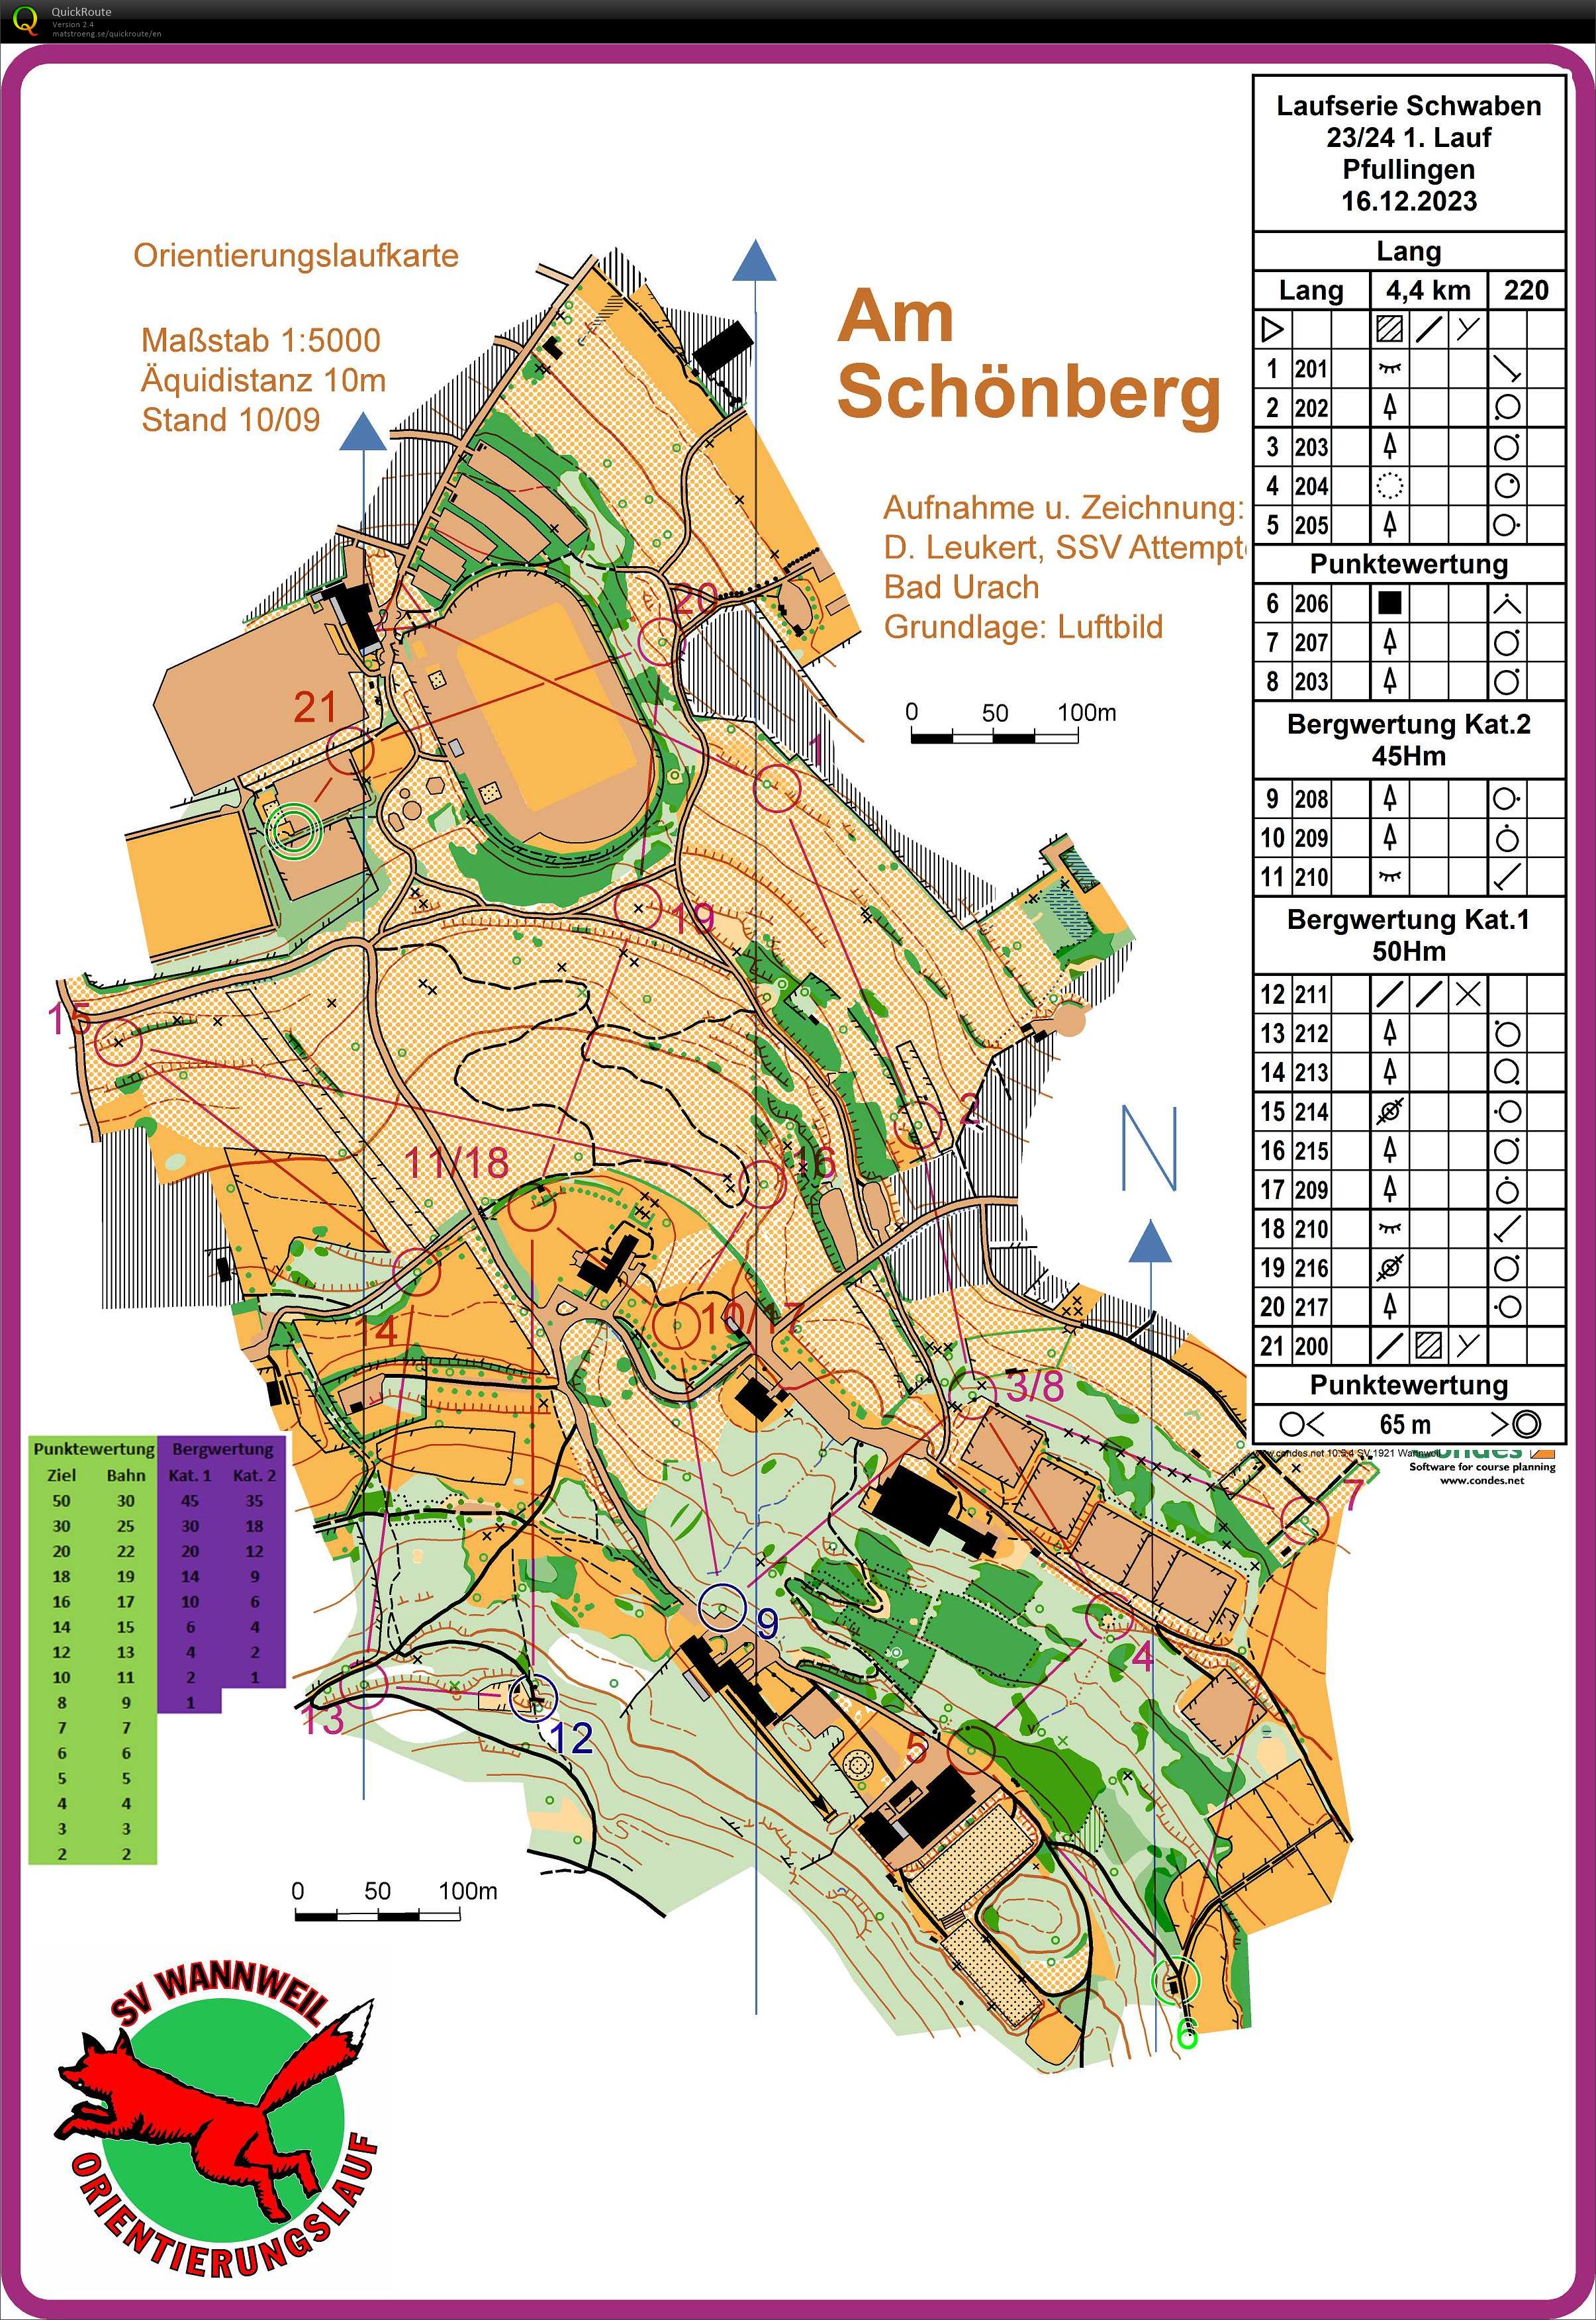 Laufserie Schwaben 23/24 1. Round Pfullingen (16.12.2023)